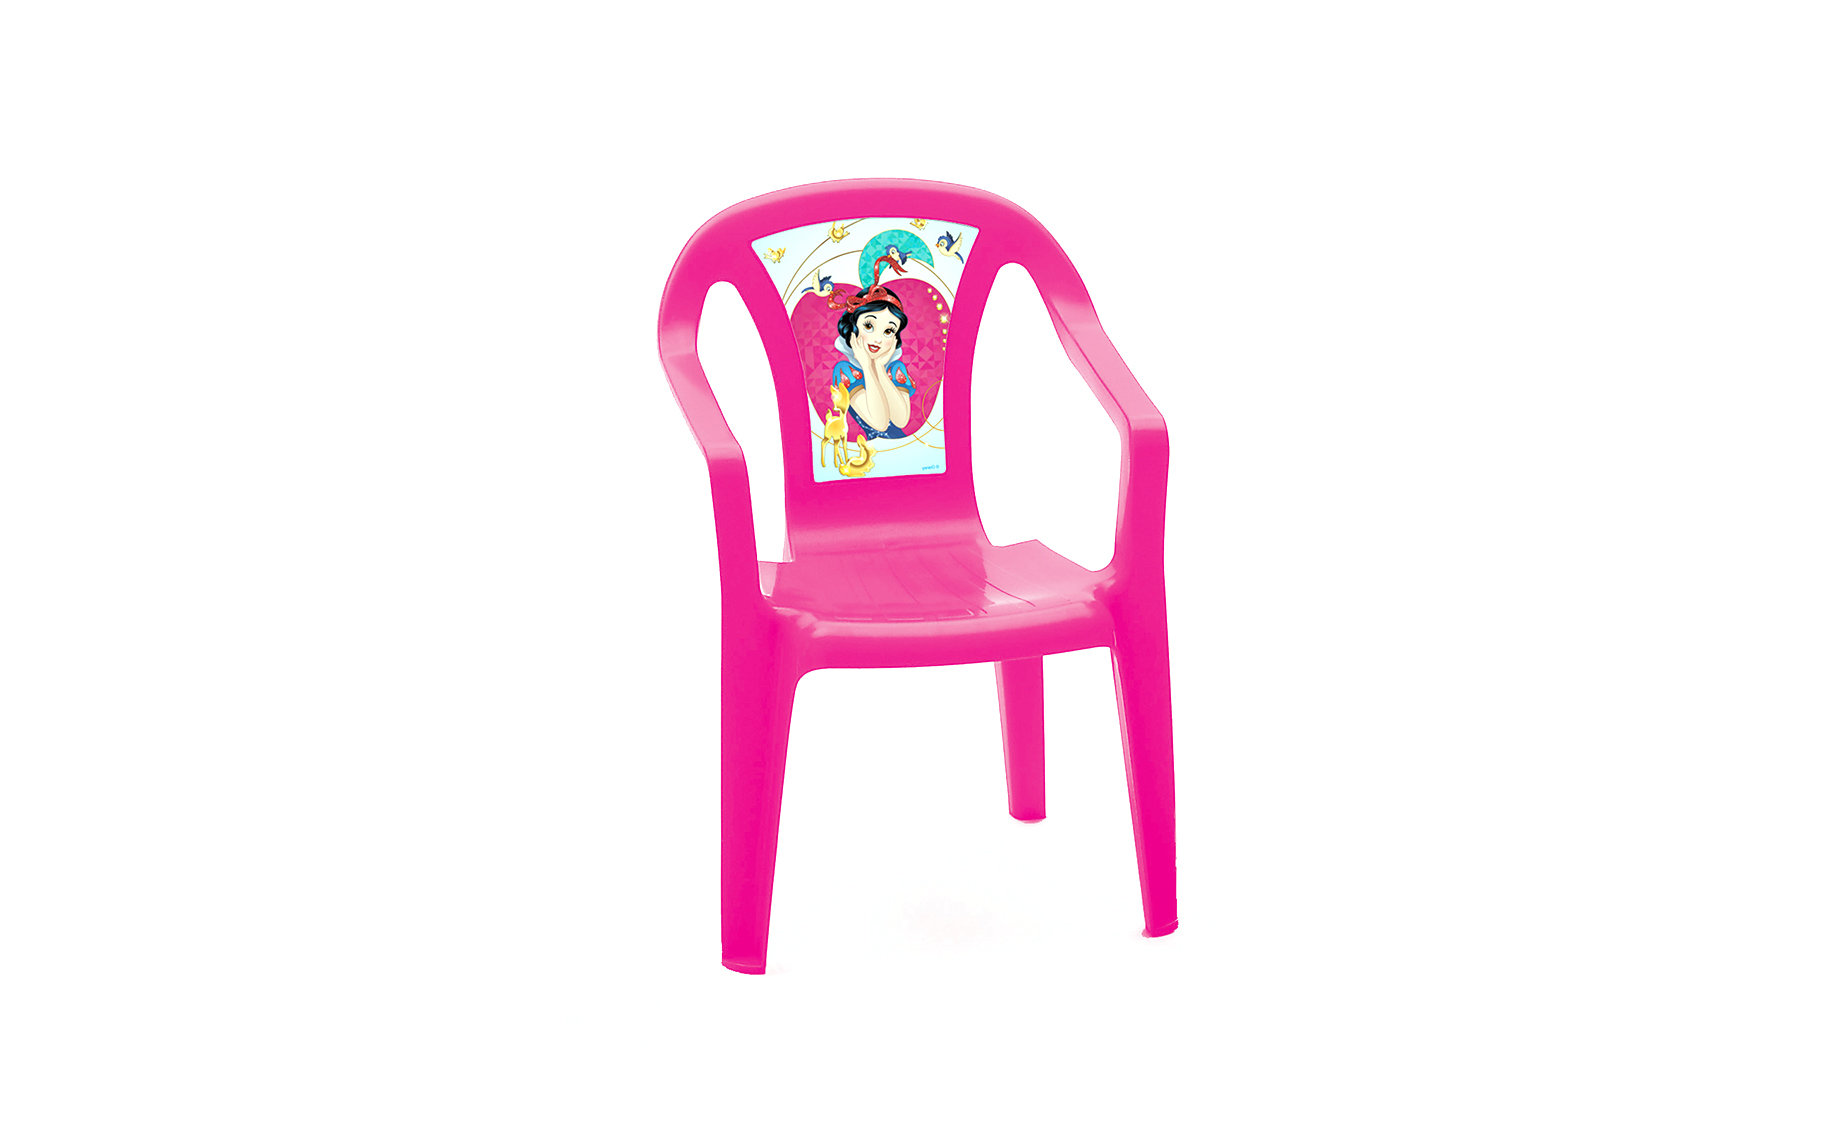 Princess stolica više motiva